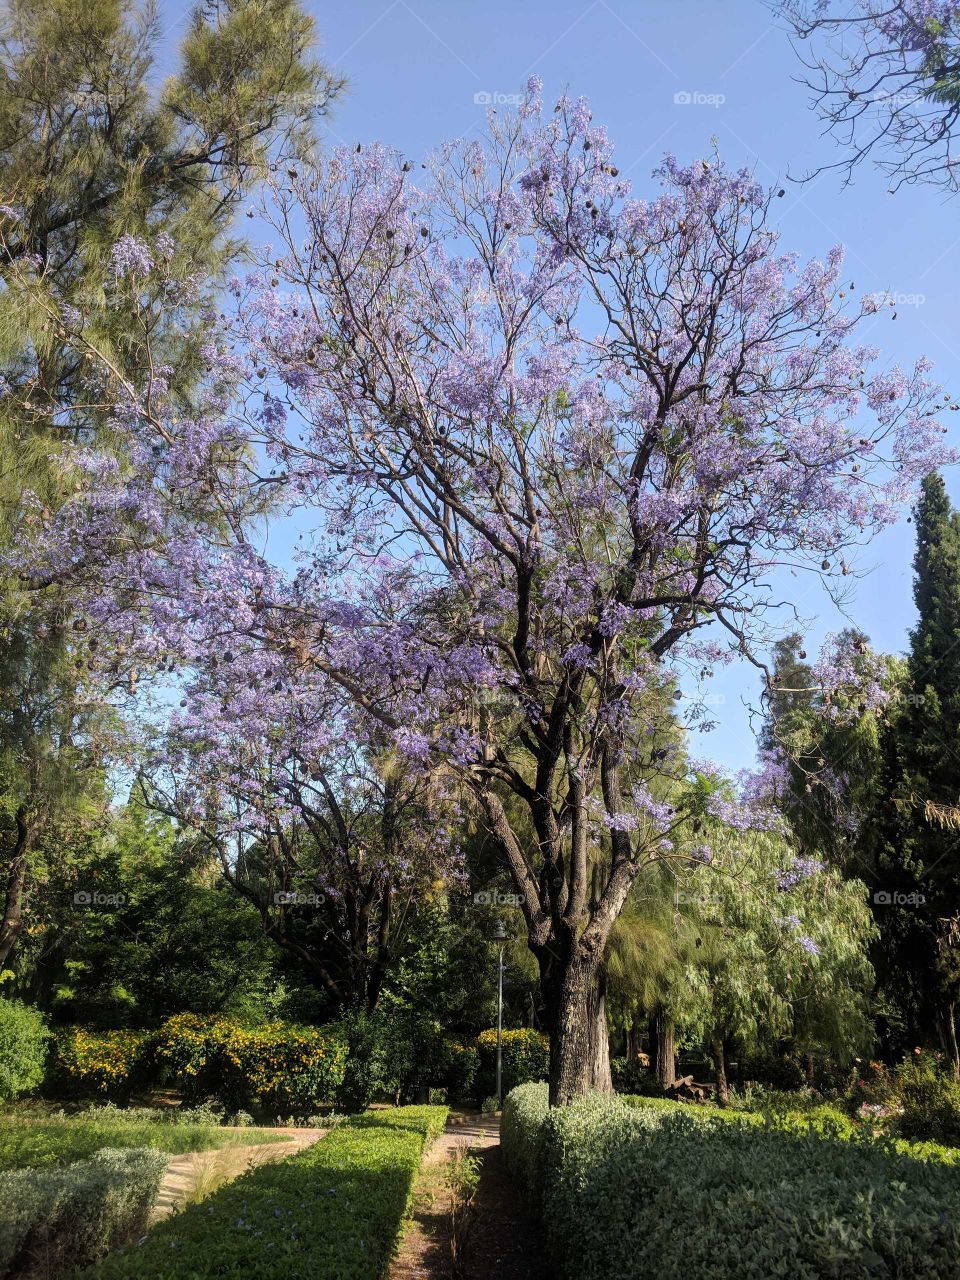 Beautiful Tree with Purple Flowers in a Garden - Jardin Jnan Sbil in Fez (Fes), Morocco